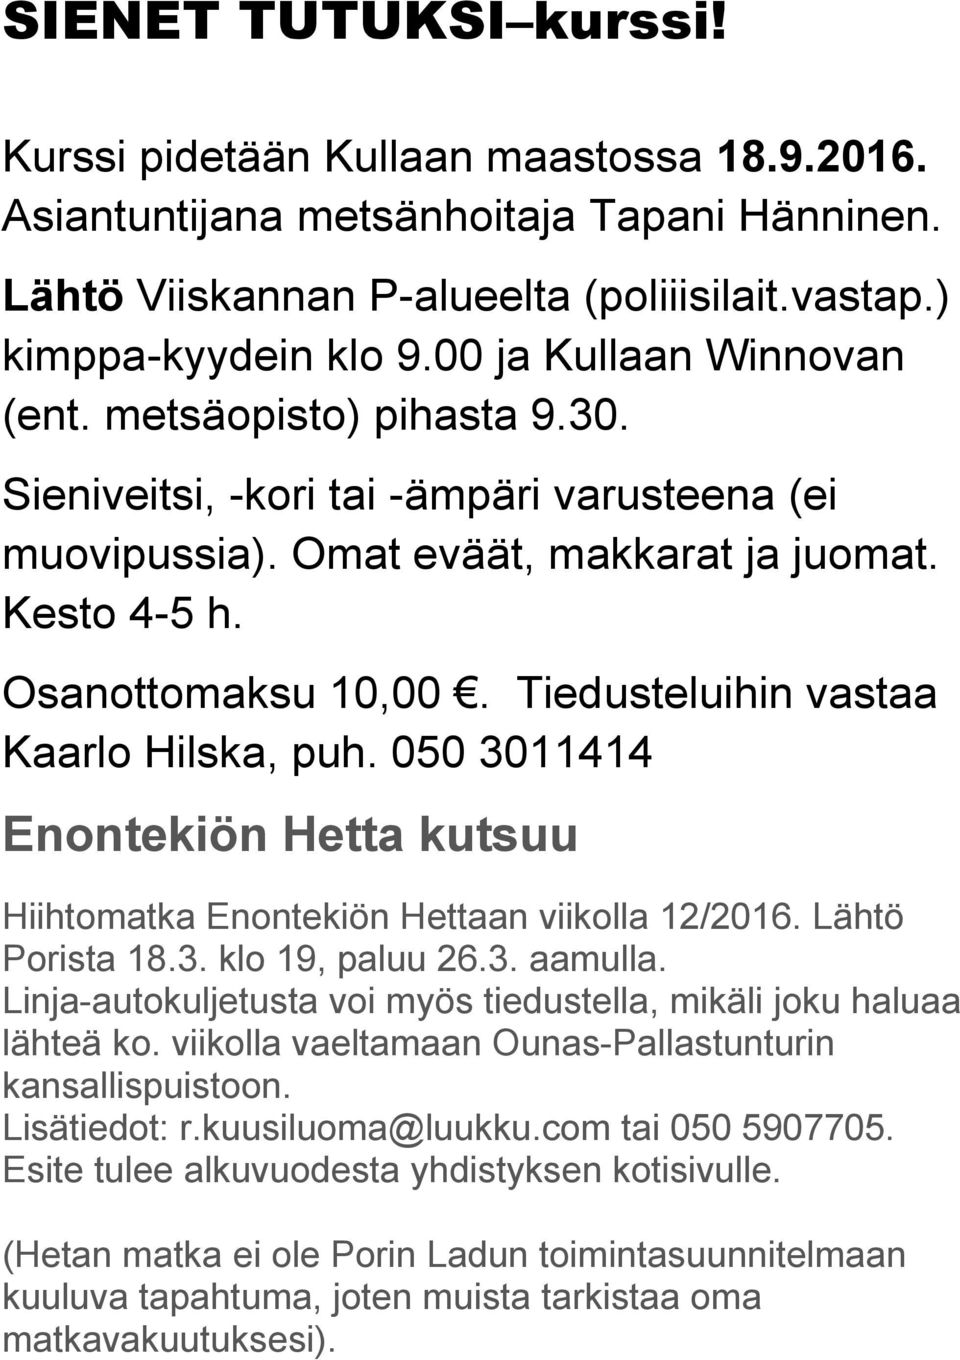 Tiedusteluihin vastaa Kaarlo Hilska, puh. 050 3011414 Enontekiön Hetta kutsuu Hiihtomatka Enontekiön Hettaan viikolla 12/2016. Lähtö Porista 18.3. klo 19, paluu 26.3. aamulla.